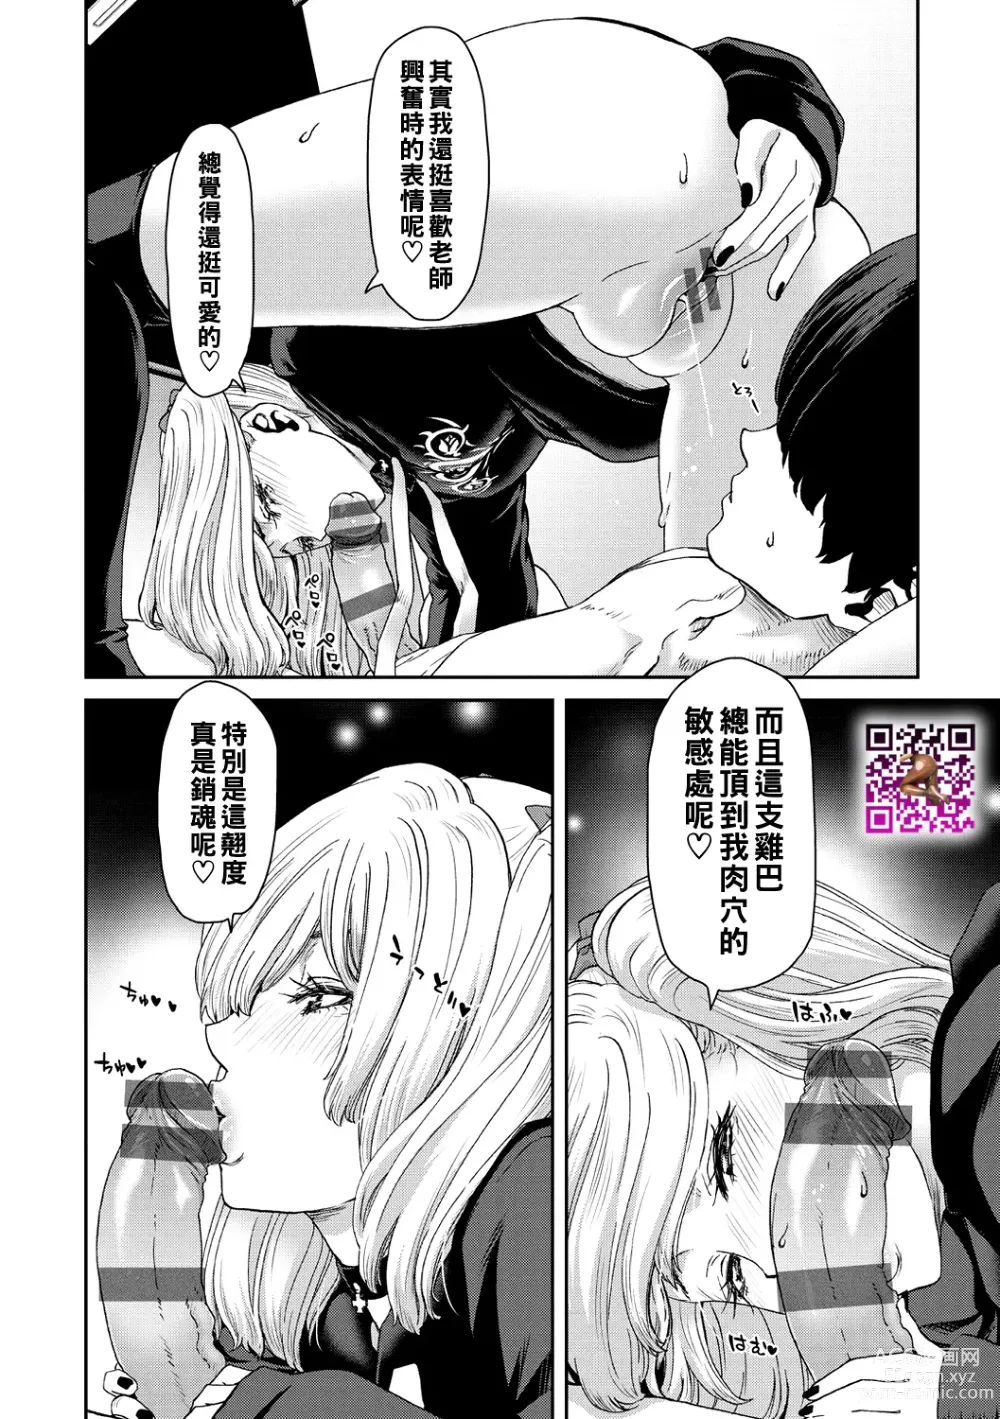 Page 18 of manga Shiyokka Hametsu SEX